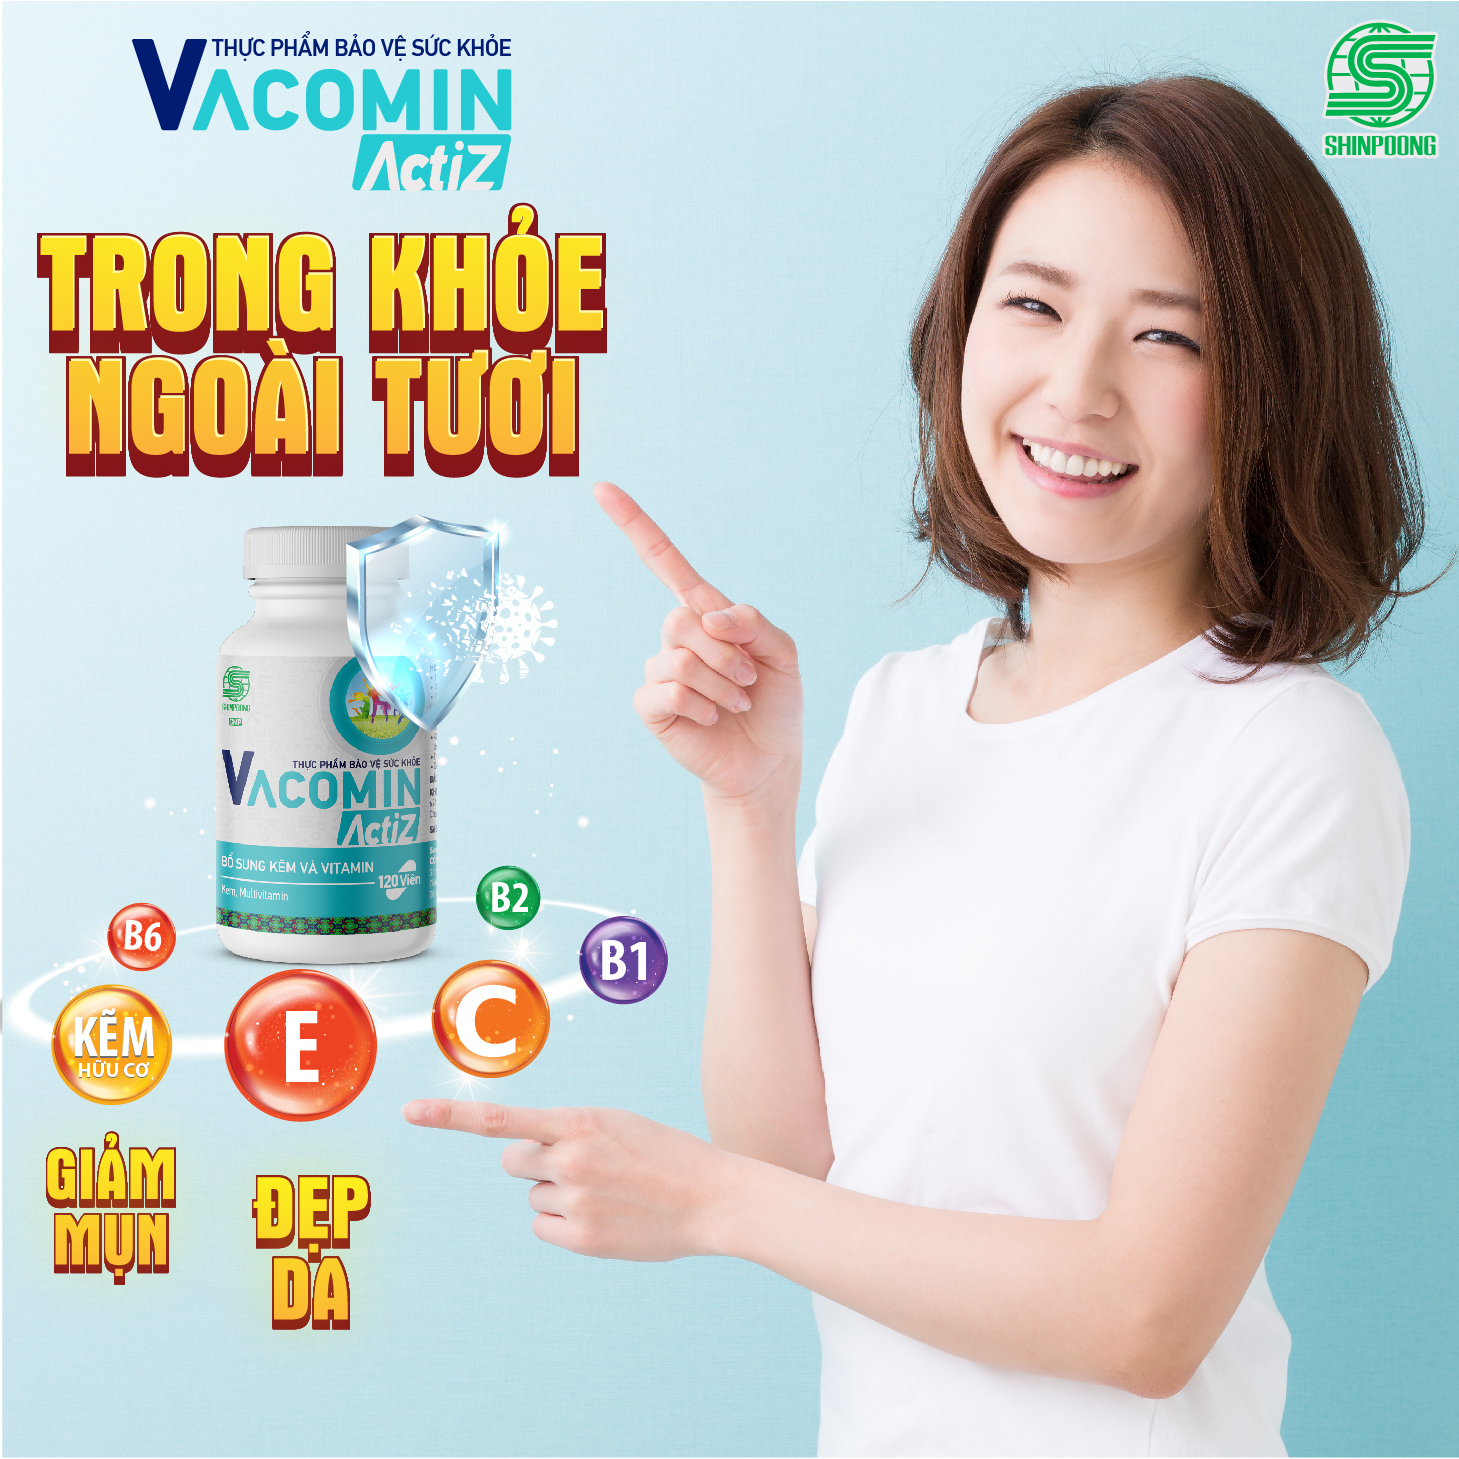 Thực Phẩm Bảo Vệ Sức Khỏe bổ sung vitamin tổng hợp, vitamin nhóm B, E, C và Kẽm hữu cơ Shinpoong Vacomin ActiZ - Hộp 60 viên